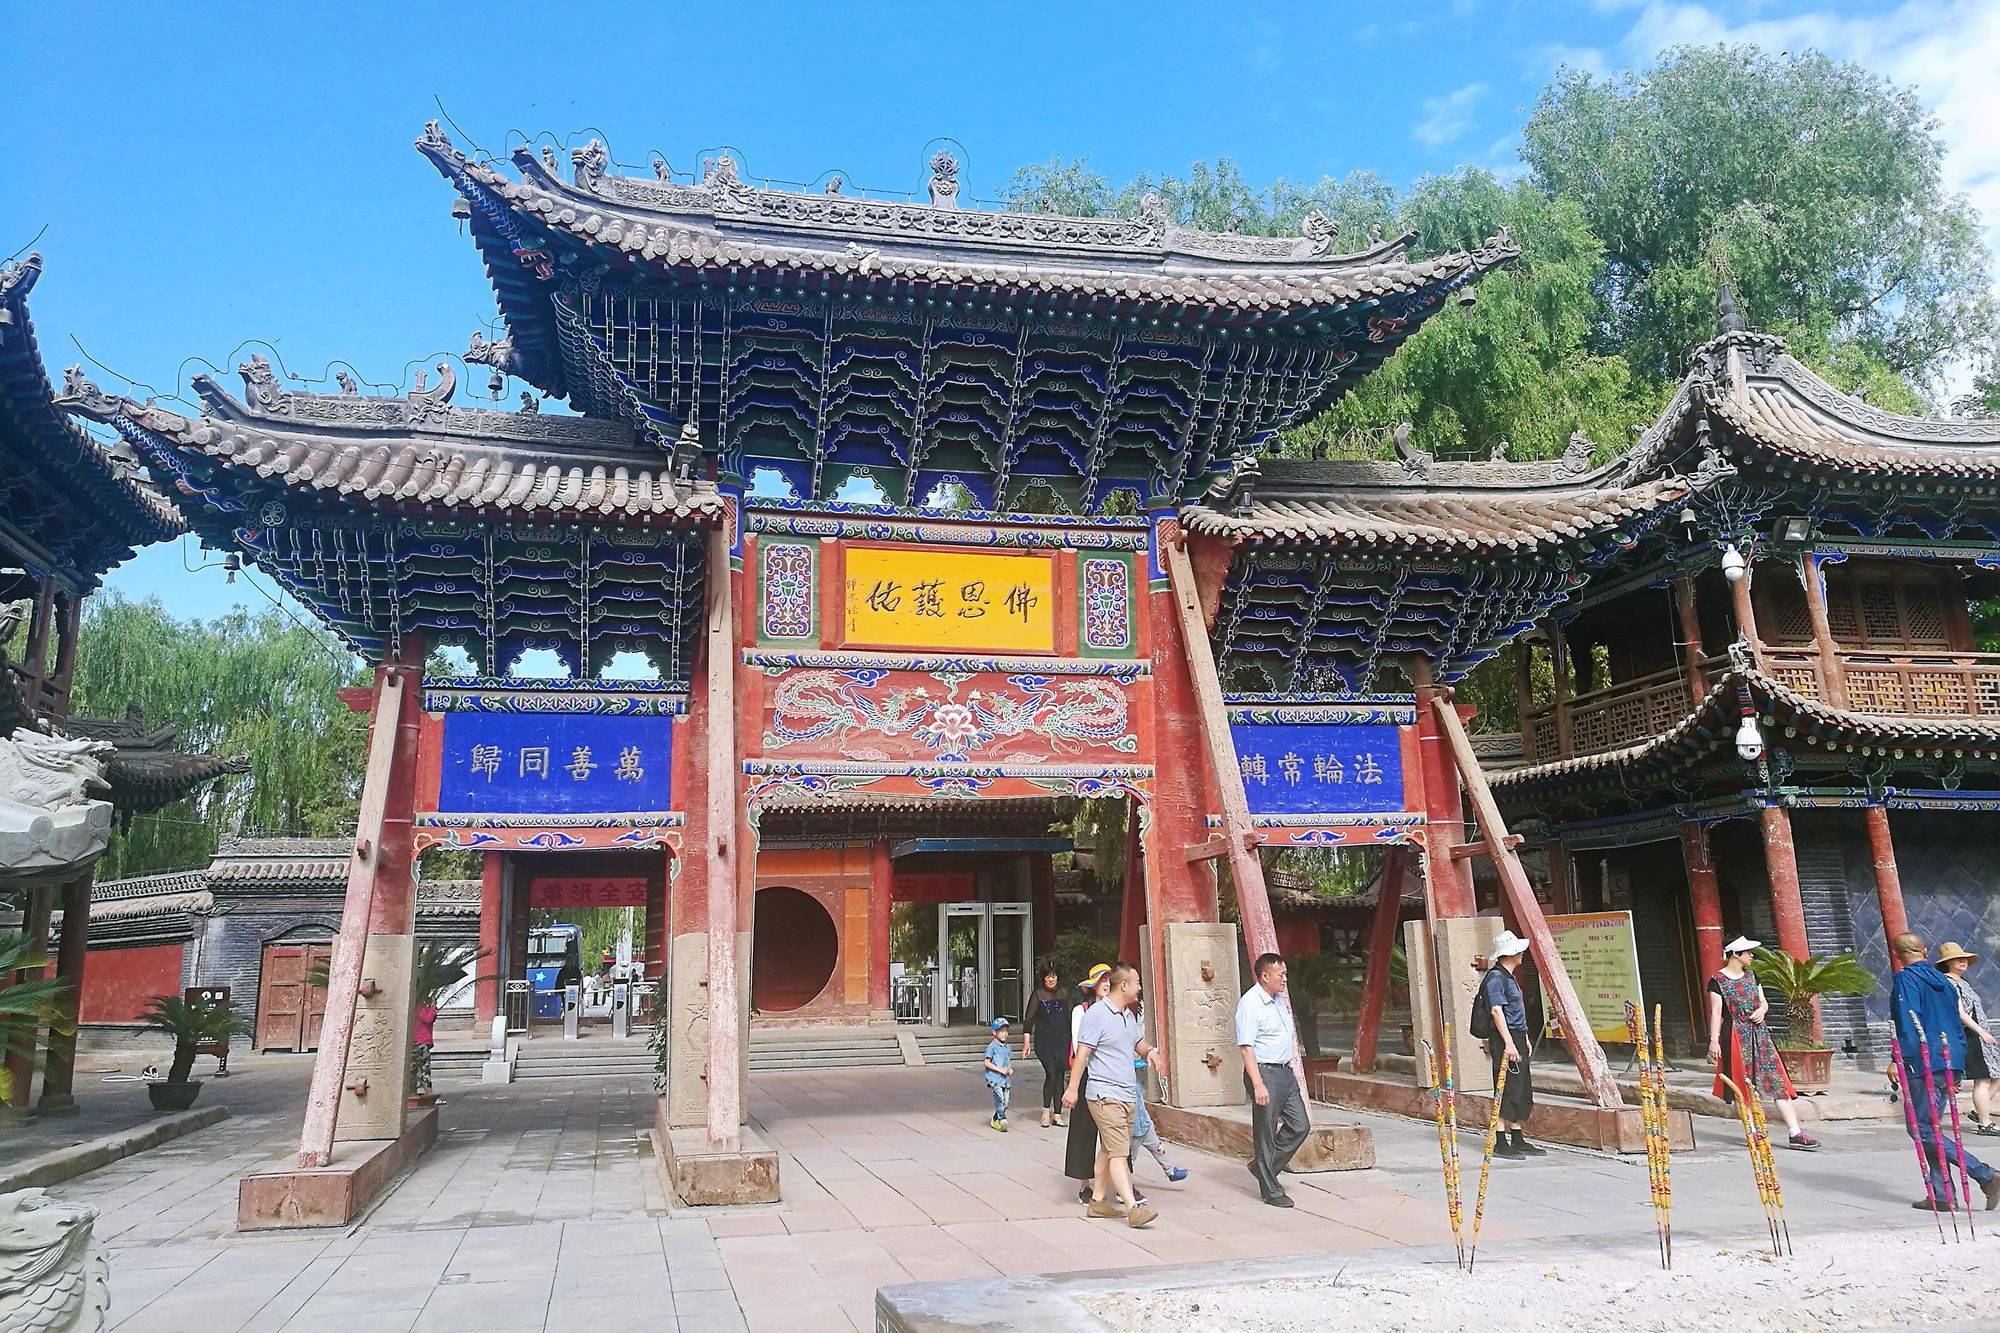 甘肃张掖有一座大佛寺，历史悠久，环境清幽，寺中造像精美绝伦